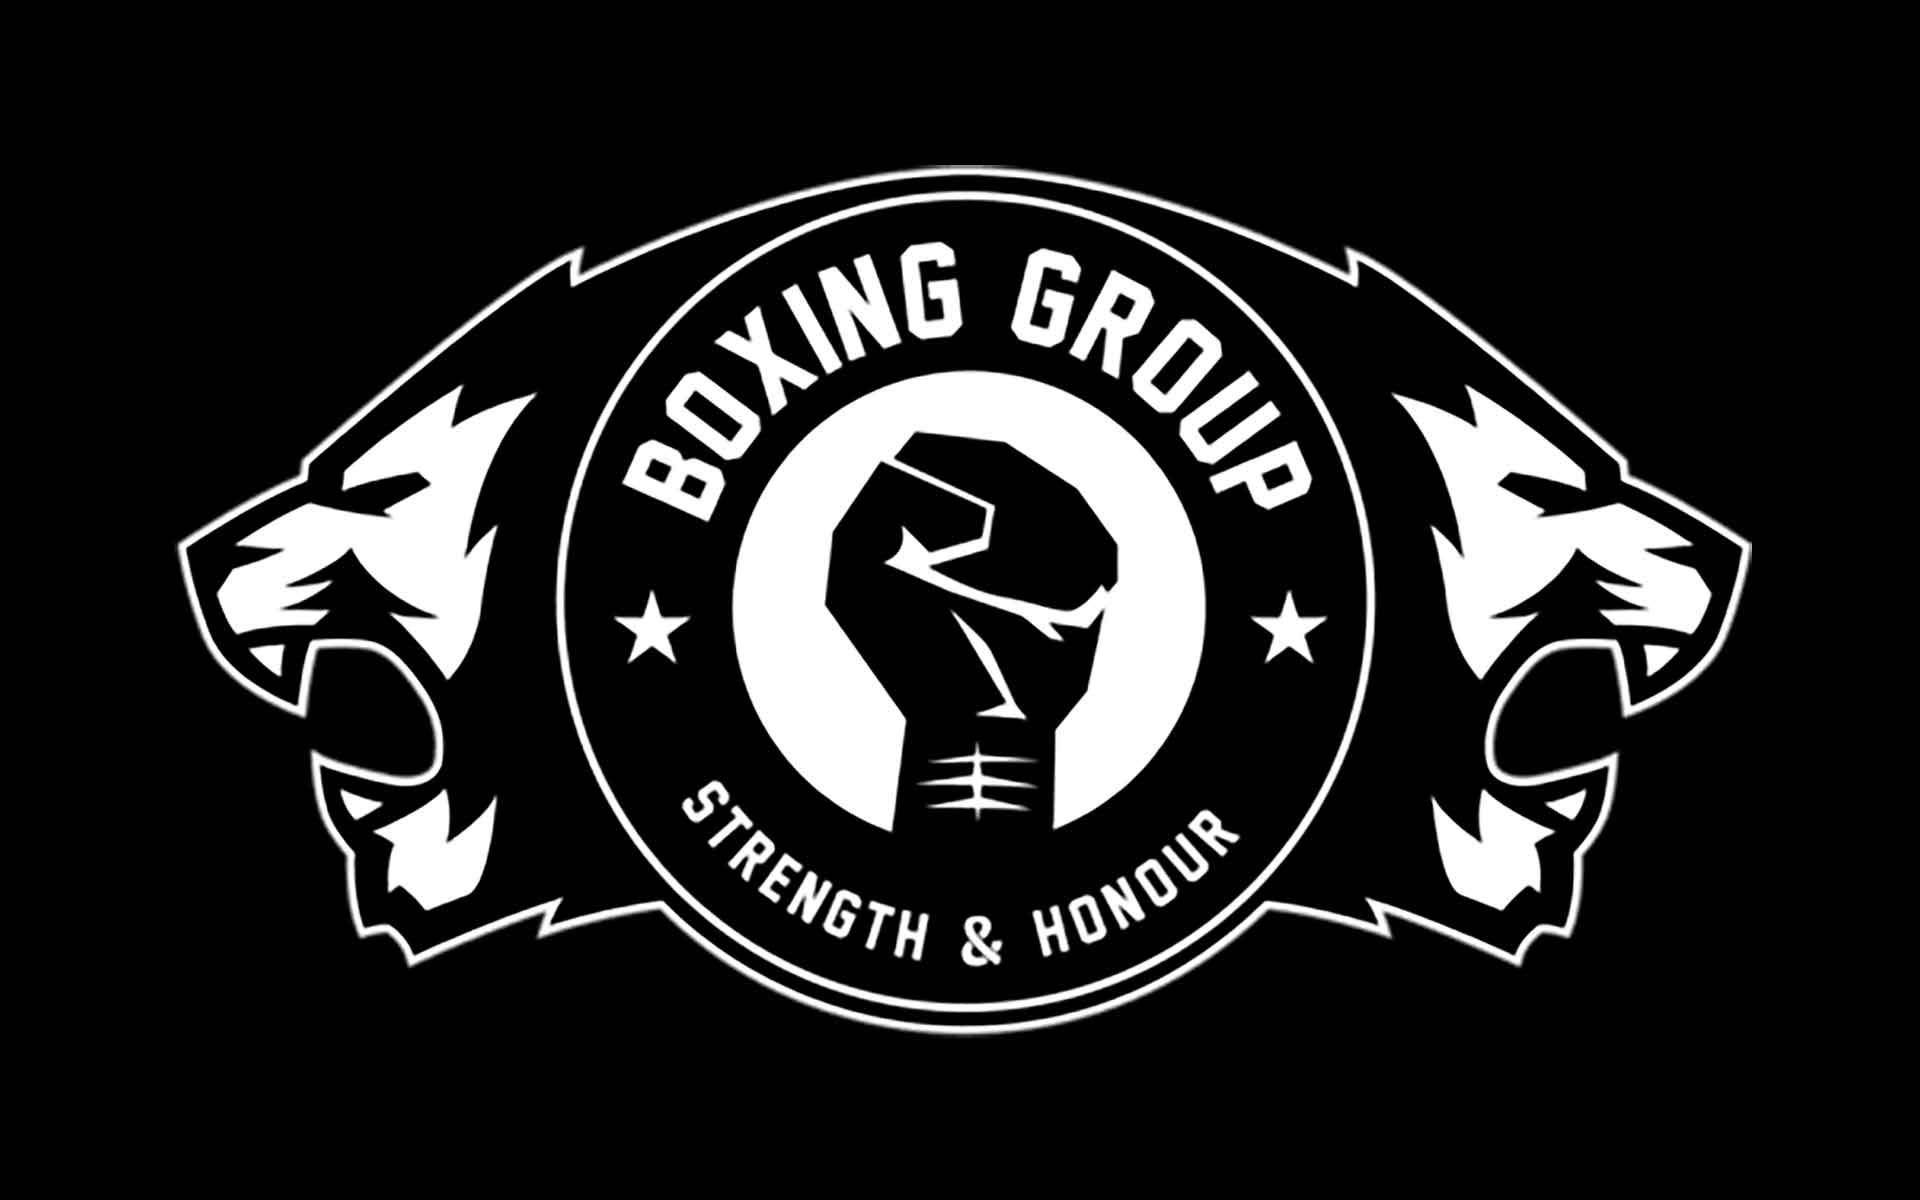 Boxing Group Voorburg